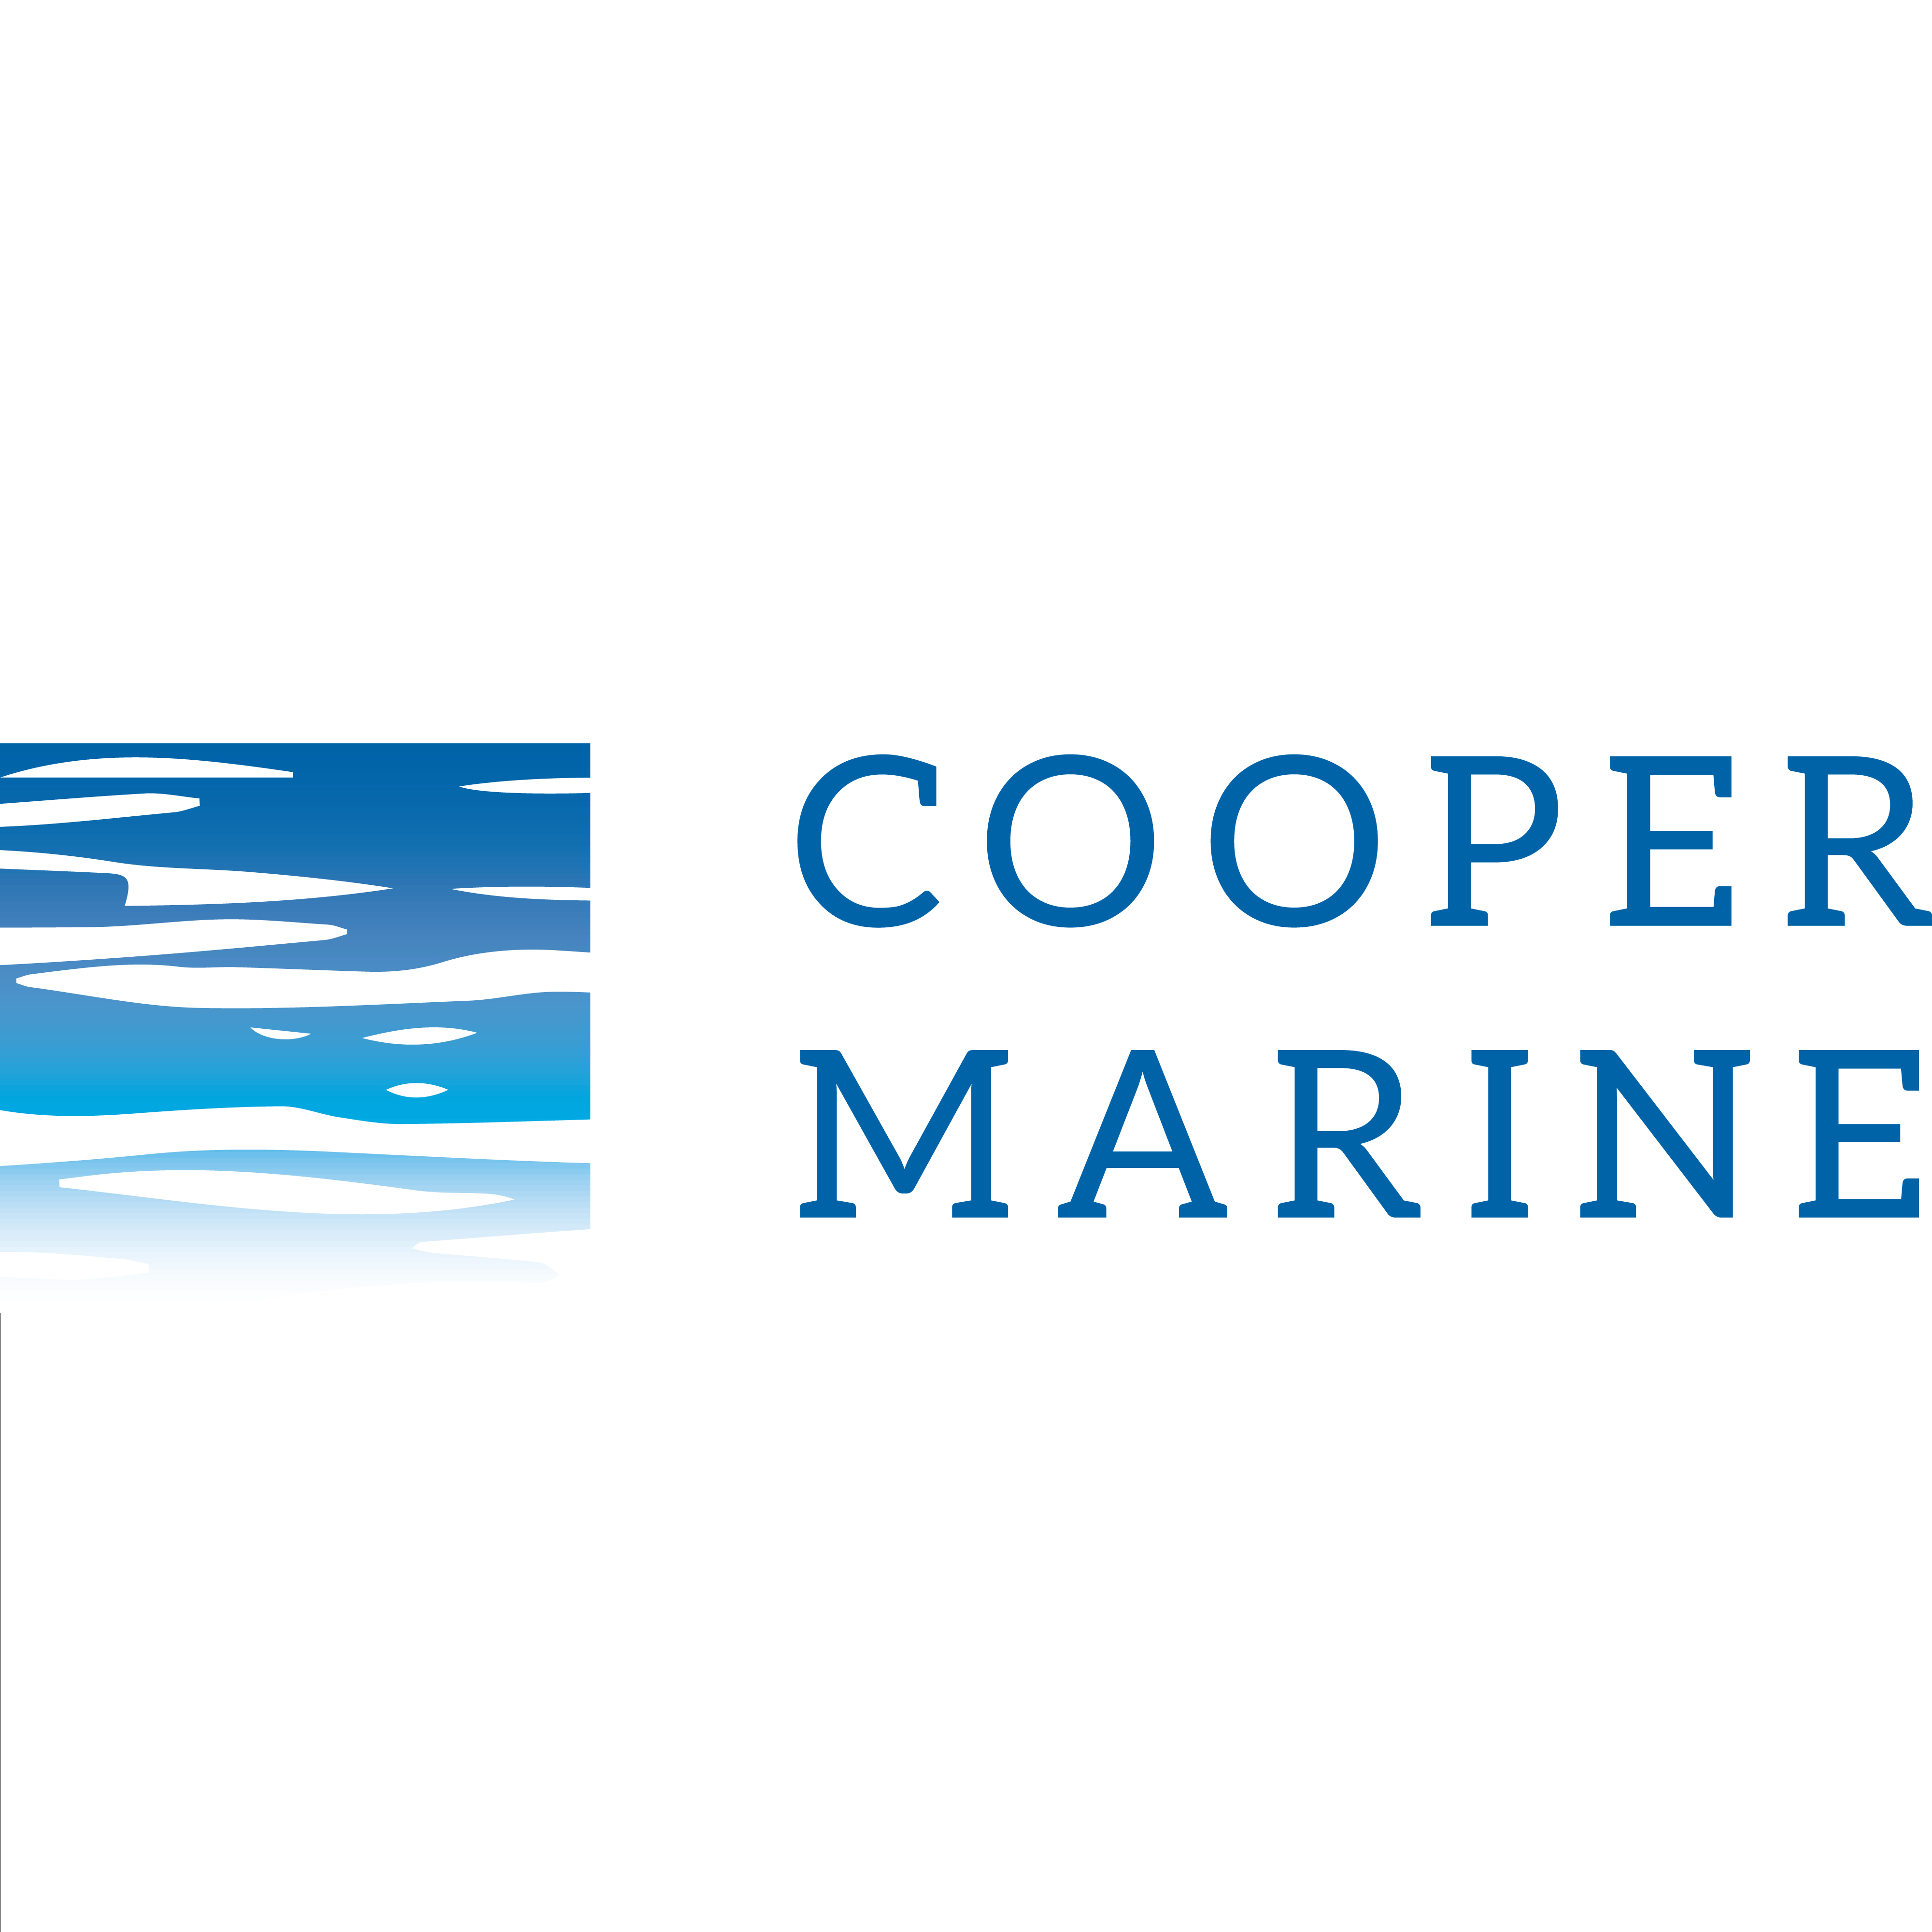 Branding and Logo Design Examples Portfolio Australia - Cooper Marine